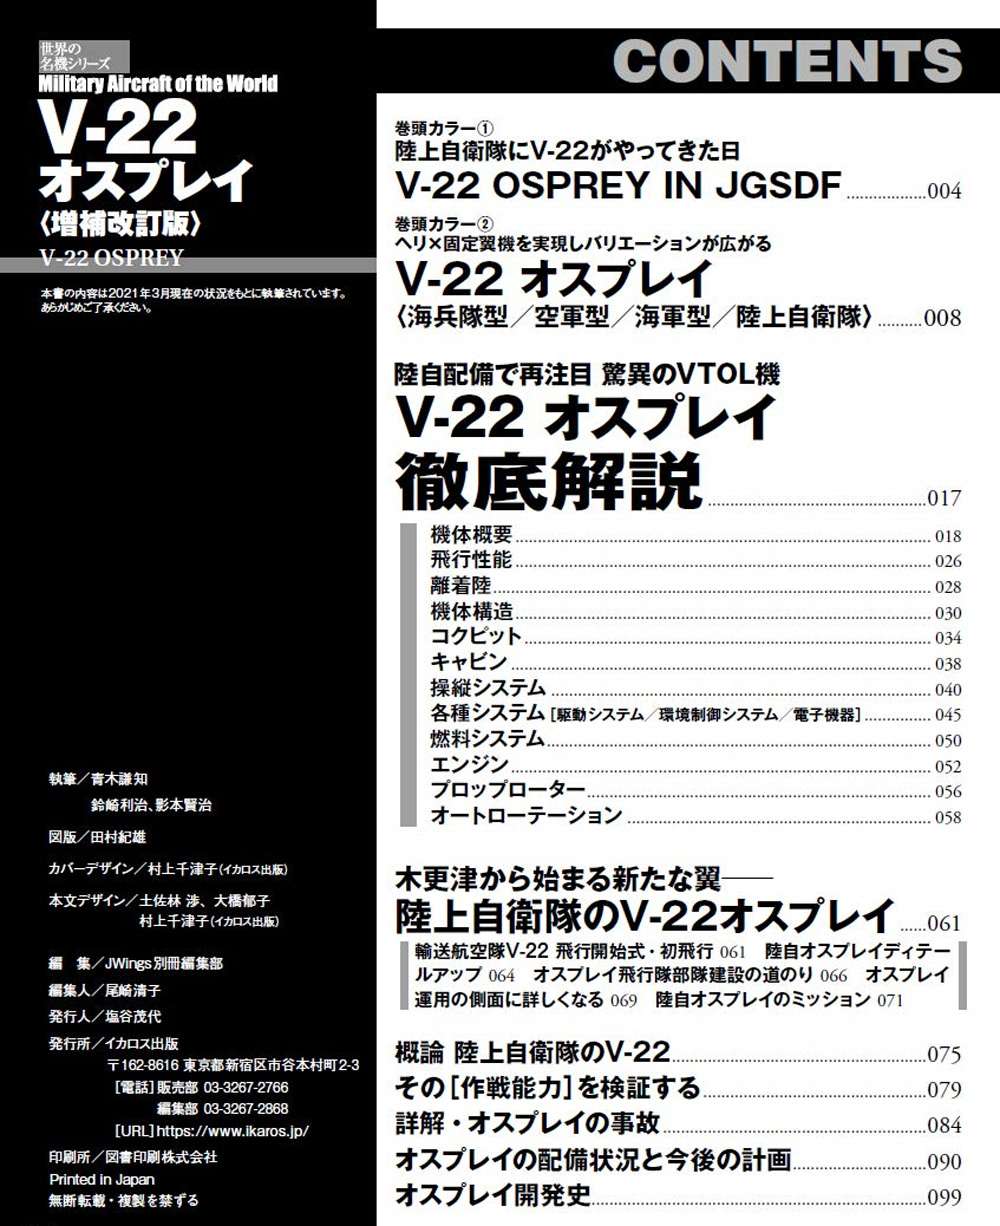 V-22 オスプレイ 増補改訂版 ムック (イカロス出版 世界の名機シリーズ No.61858-09) 商品画像_1